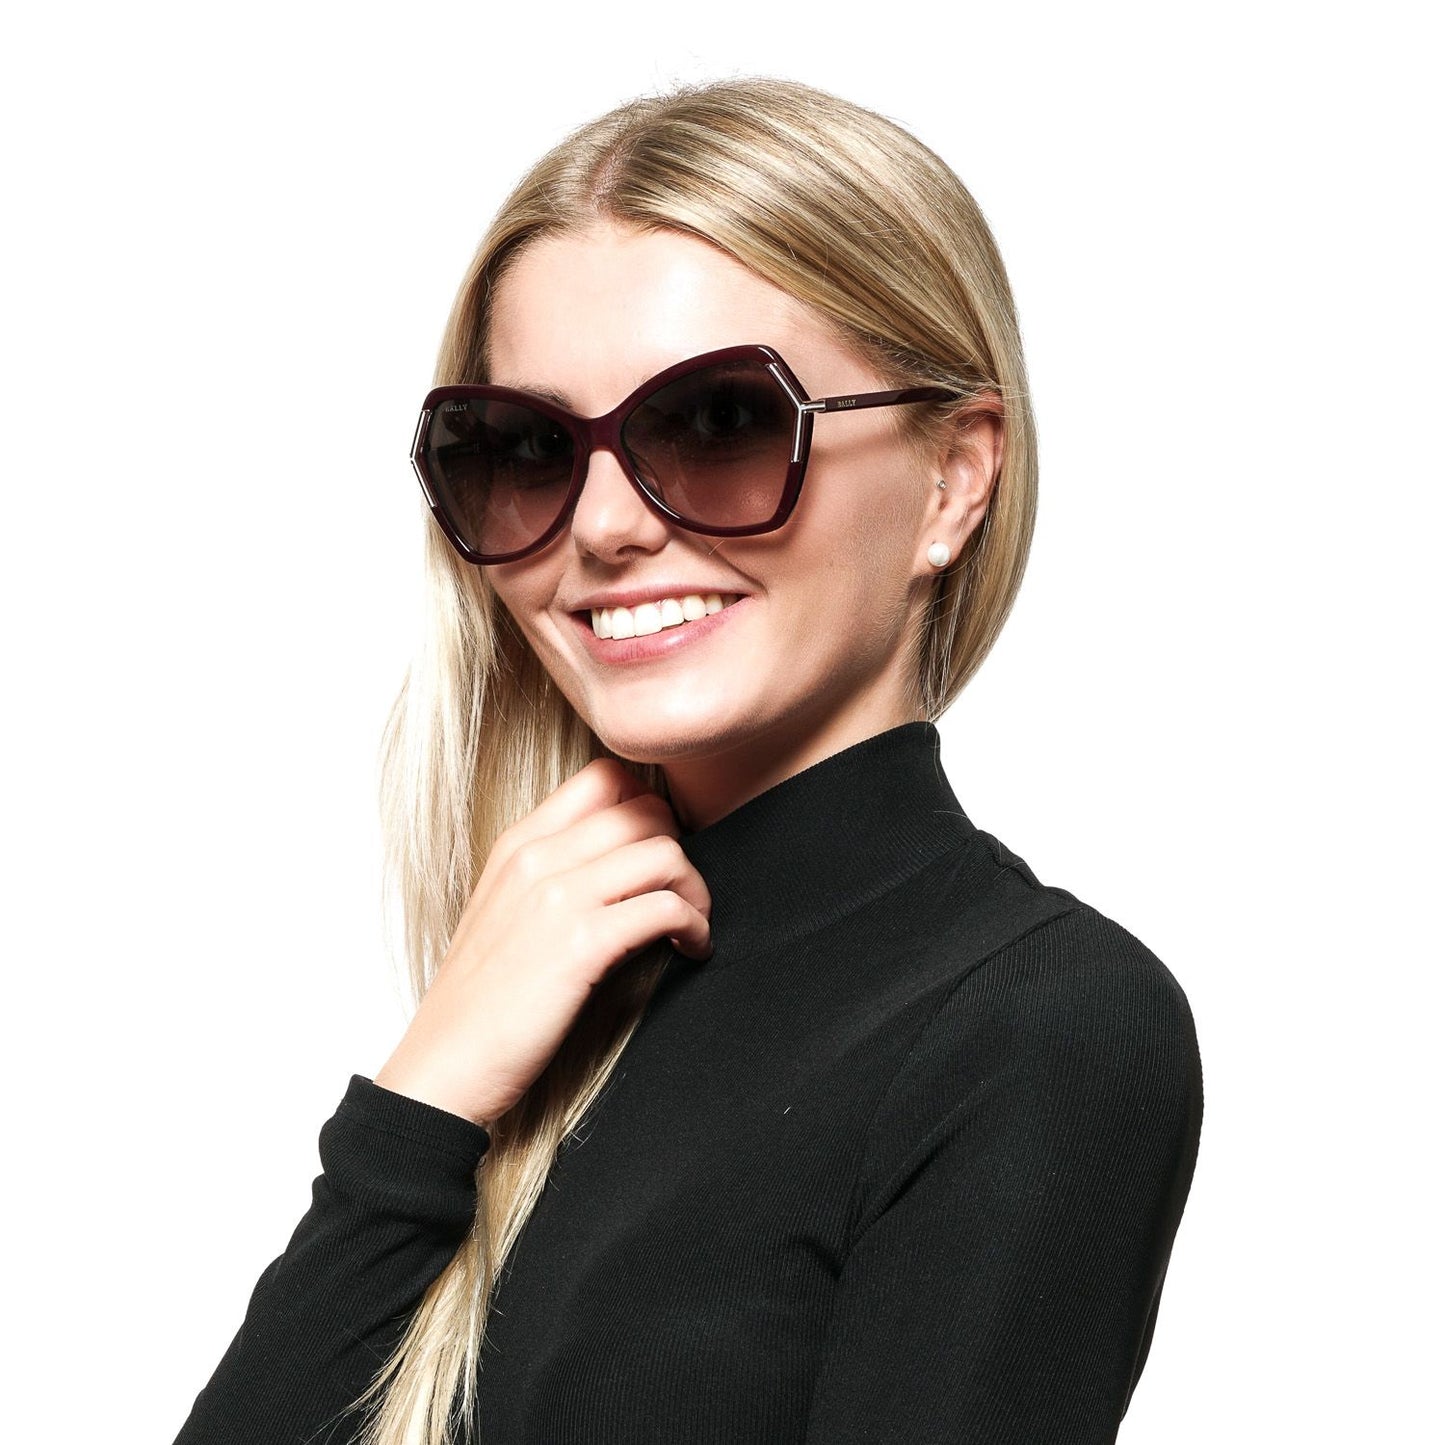 Burgundy Women Sunglasses